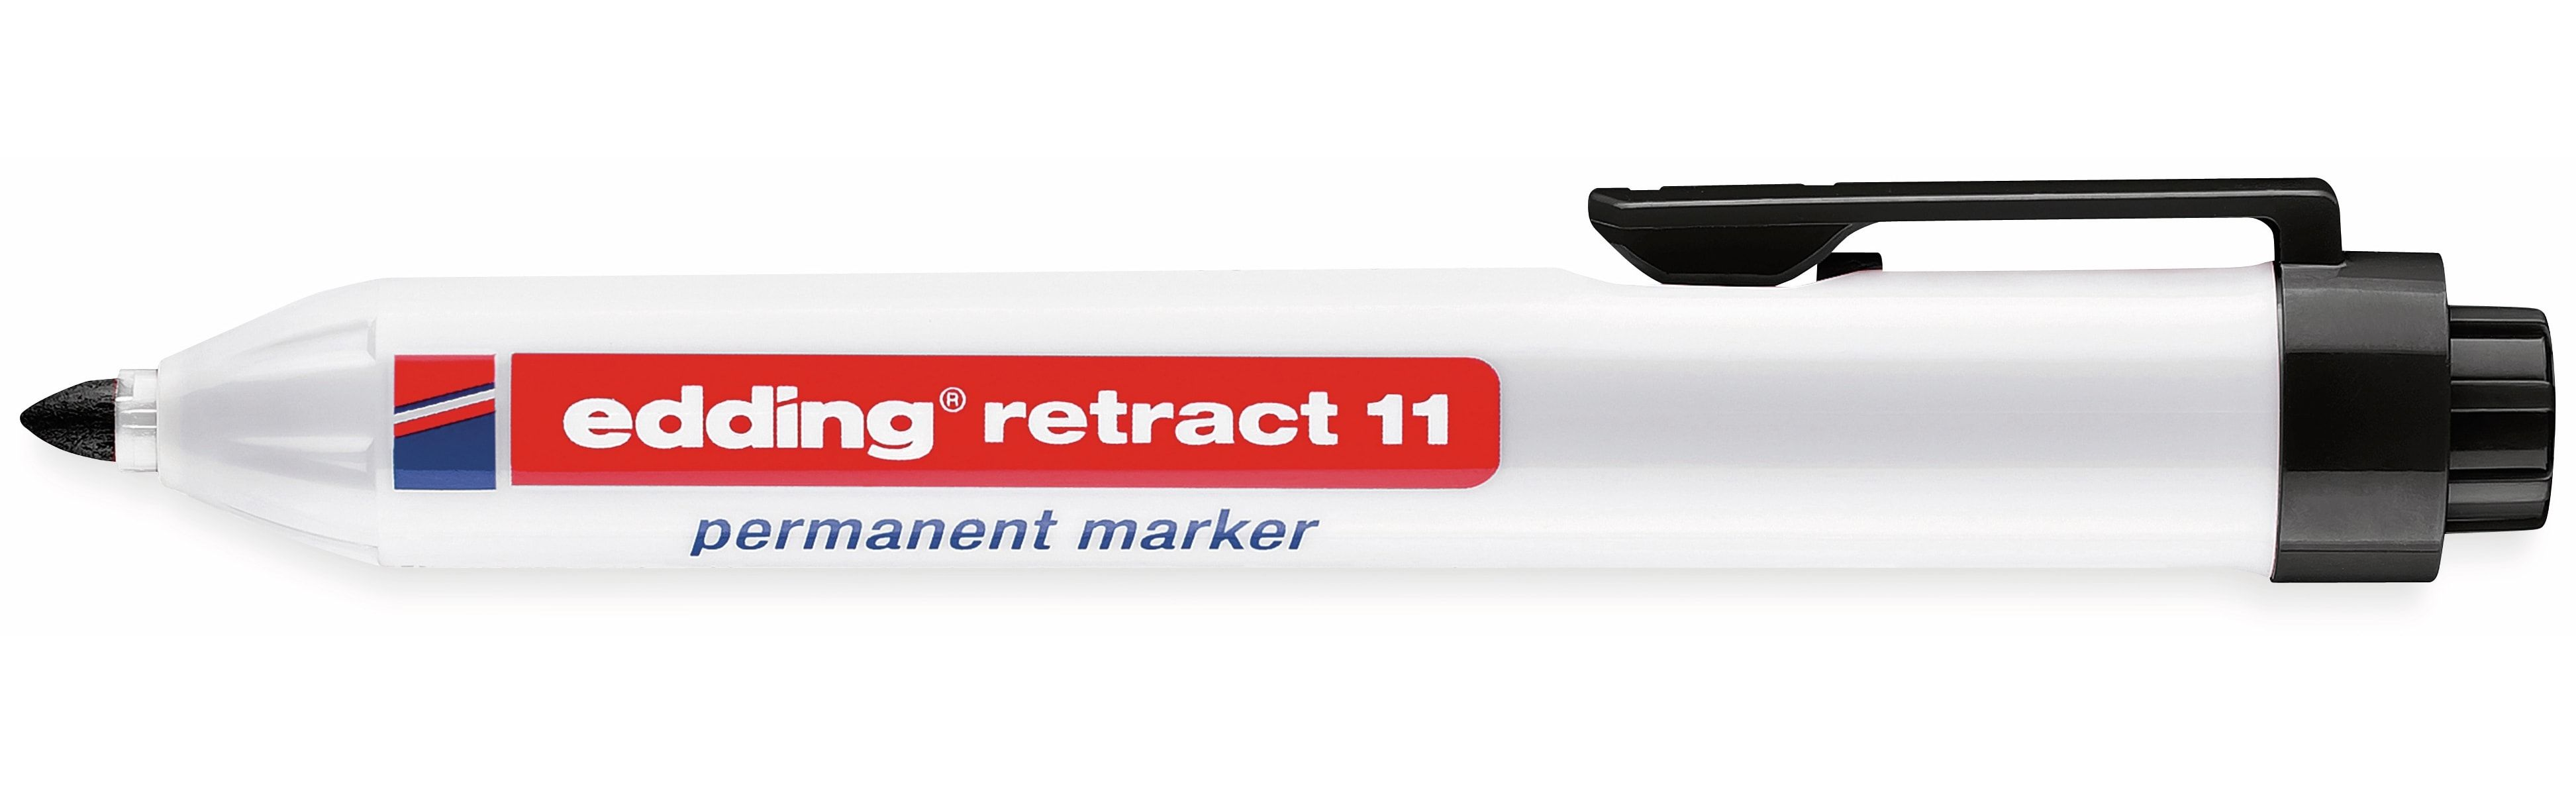 EDDING Permanentmarker retract 11 Druckmechanik schwarz 1,5-3mm Permanentmarker